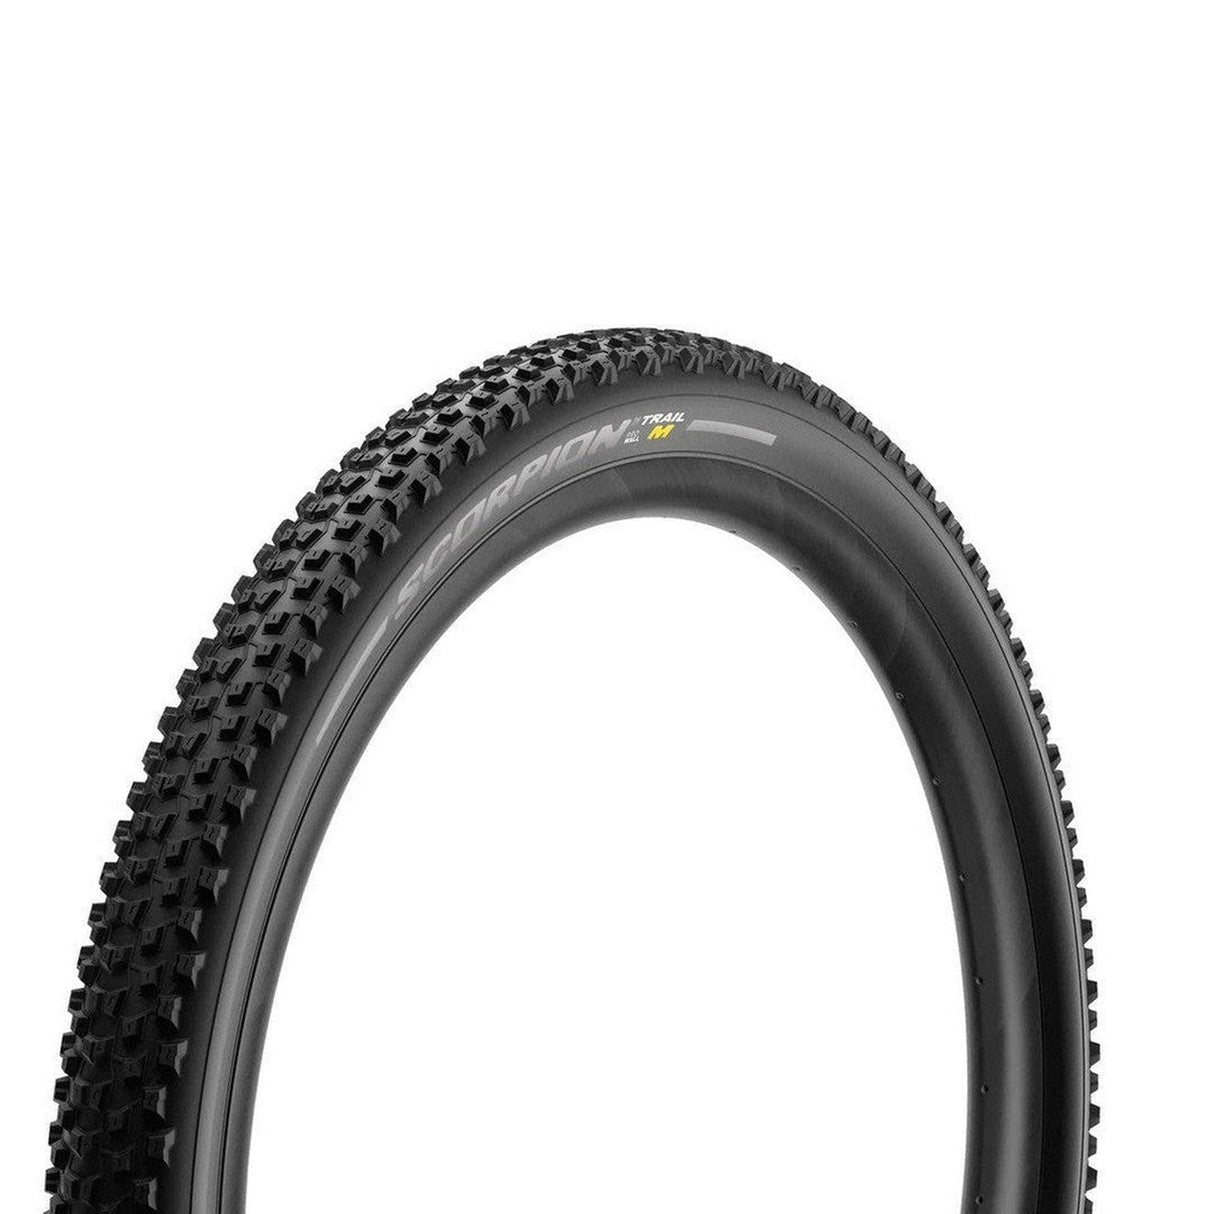 Pirelli Scorpion Trail Mixed Terrain 29x2.4 TLR Tyre